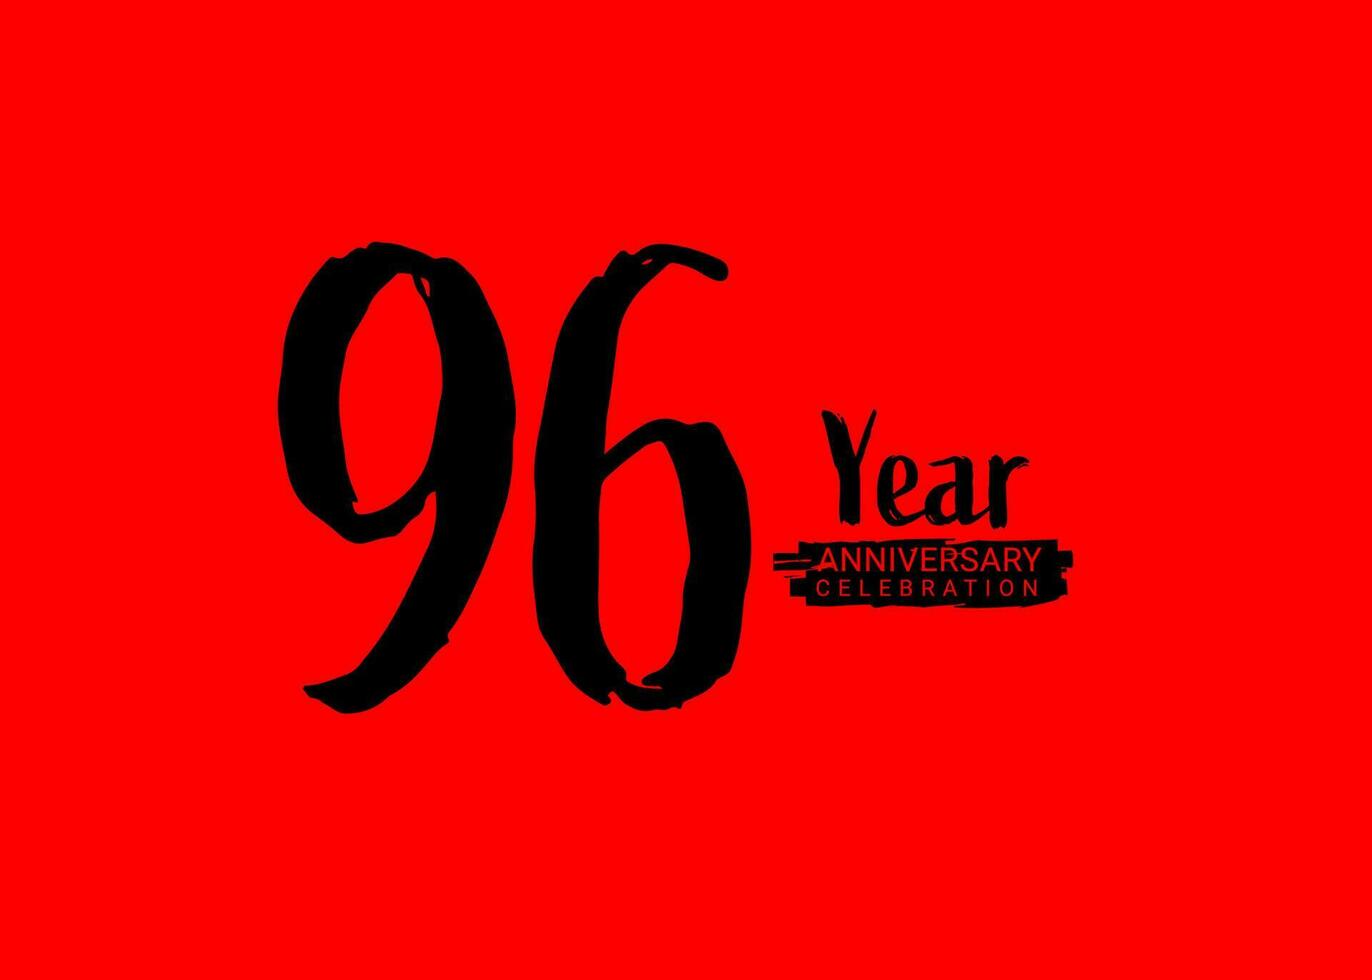 96 år årsdag firande logotyp på röd bakgrund, 96 siffra logotyp design, 96:a födelsedag logotyp, logotyp årsdag, vektor årsdag för firande, affisch, inbjudan kort